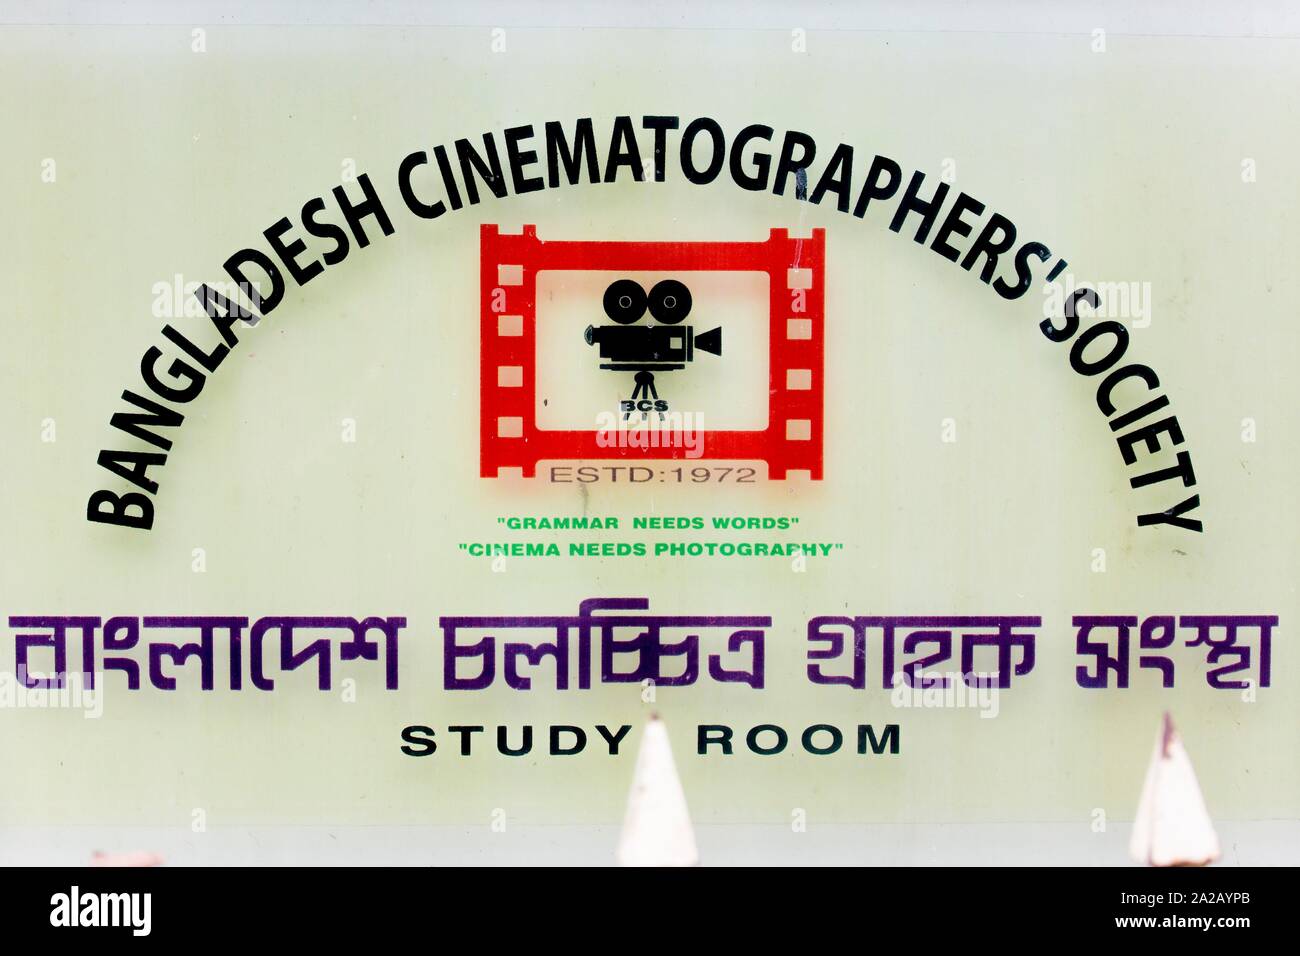 Bangladesch - Oktober 18, 2016: Delwar Jahan Jhantu, einer der am meisten populer Regisseur & Produzent in der Bengalischen Filmindustrie bei BFDC, Dhaka. Stockfoto